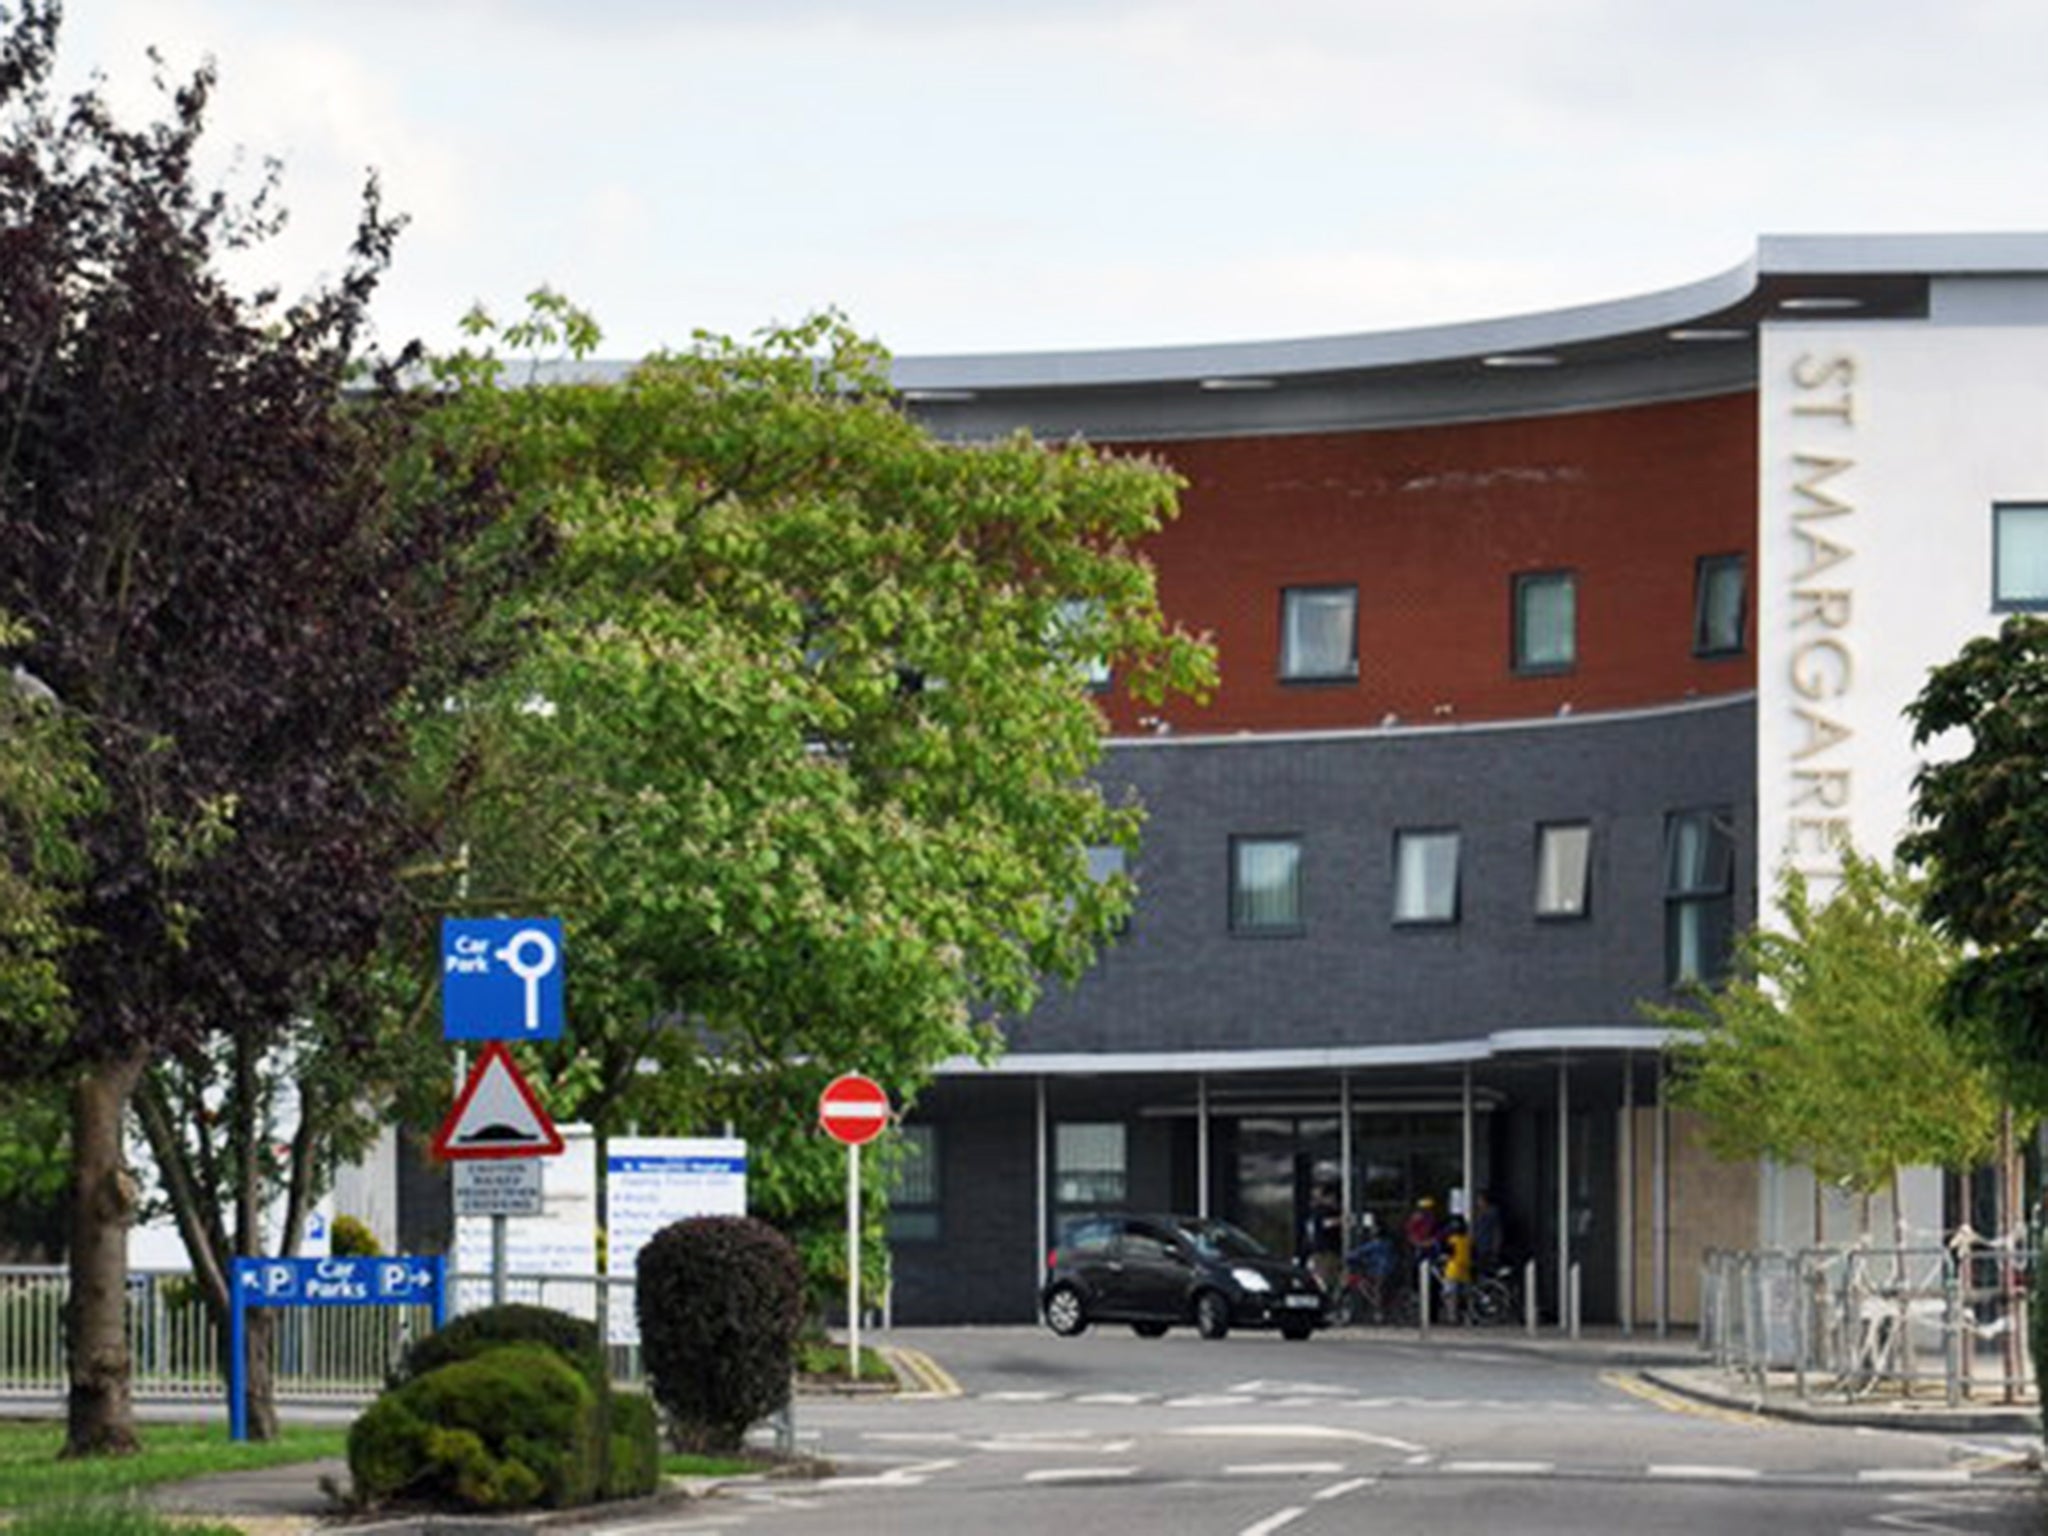 St. Margaret's Hospital in Epping